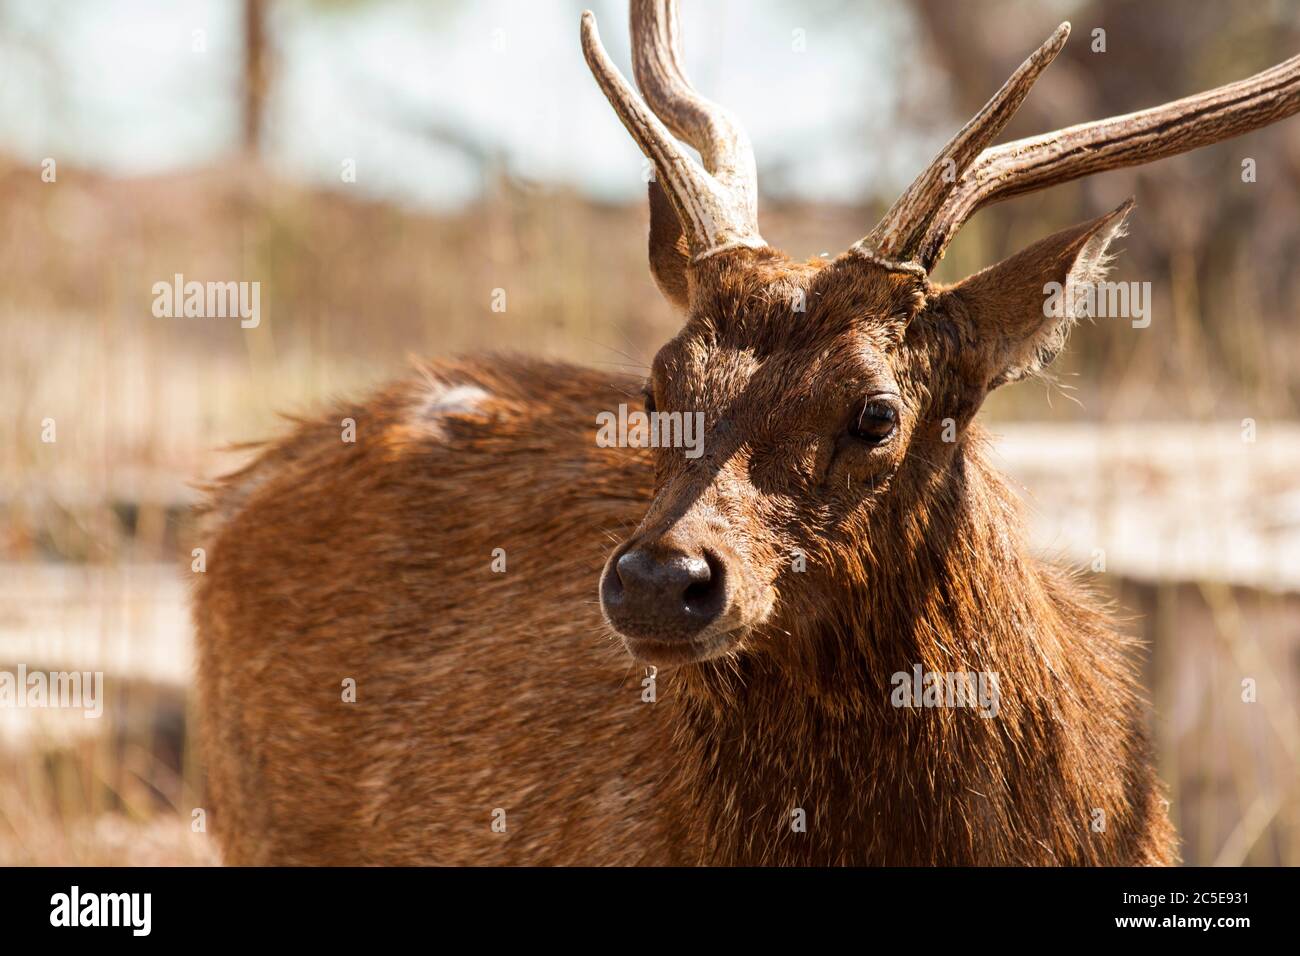 Une image rapprochée d'un cerf mâle avec de grandes cornes après avoir bu de l'eau Banque D'Images